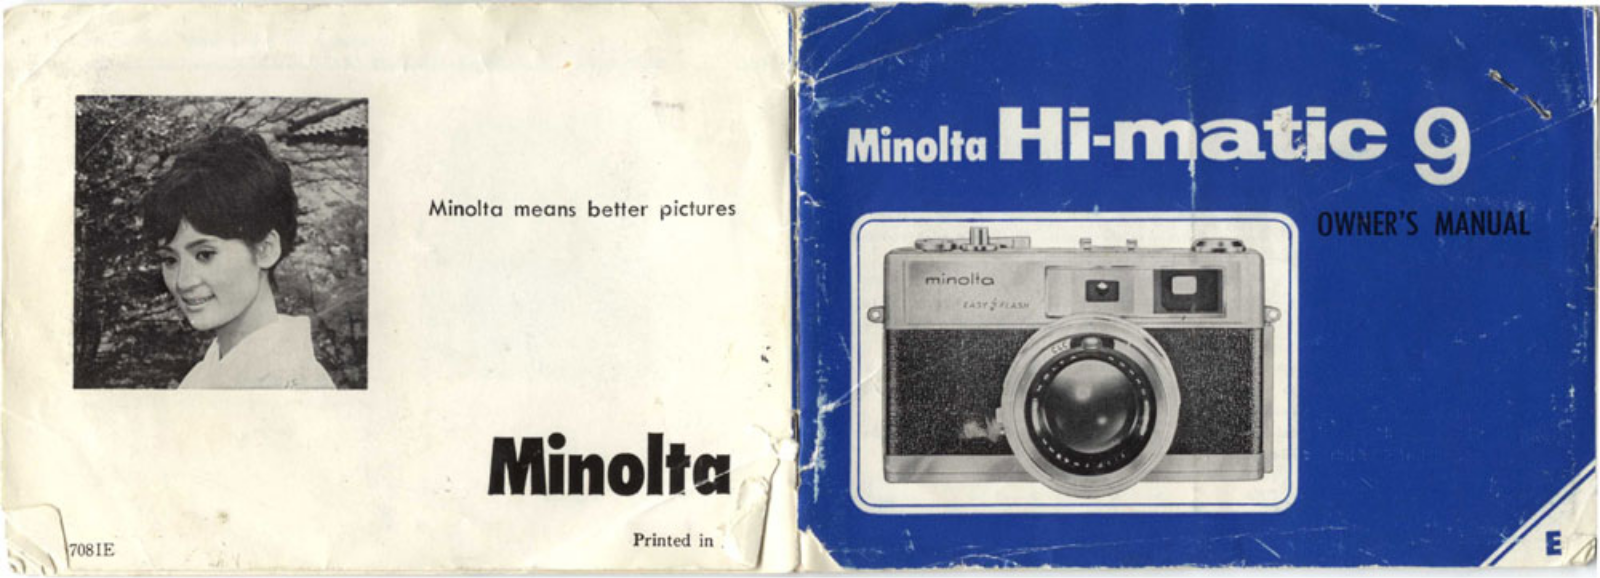 MINOLTA Hi-Matic 9 Owner's Manual